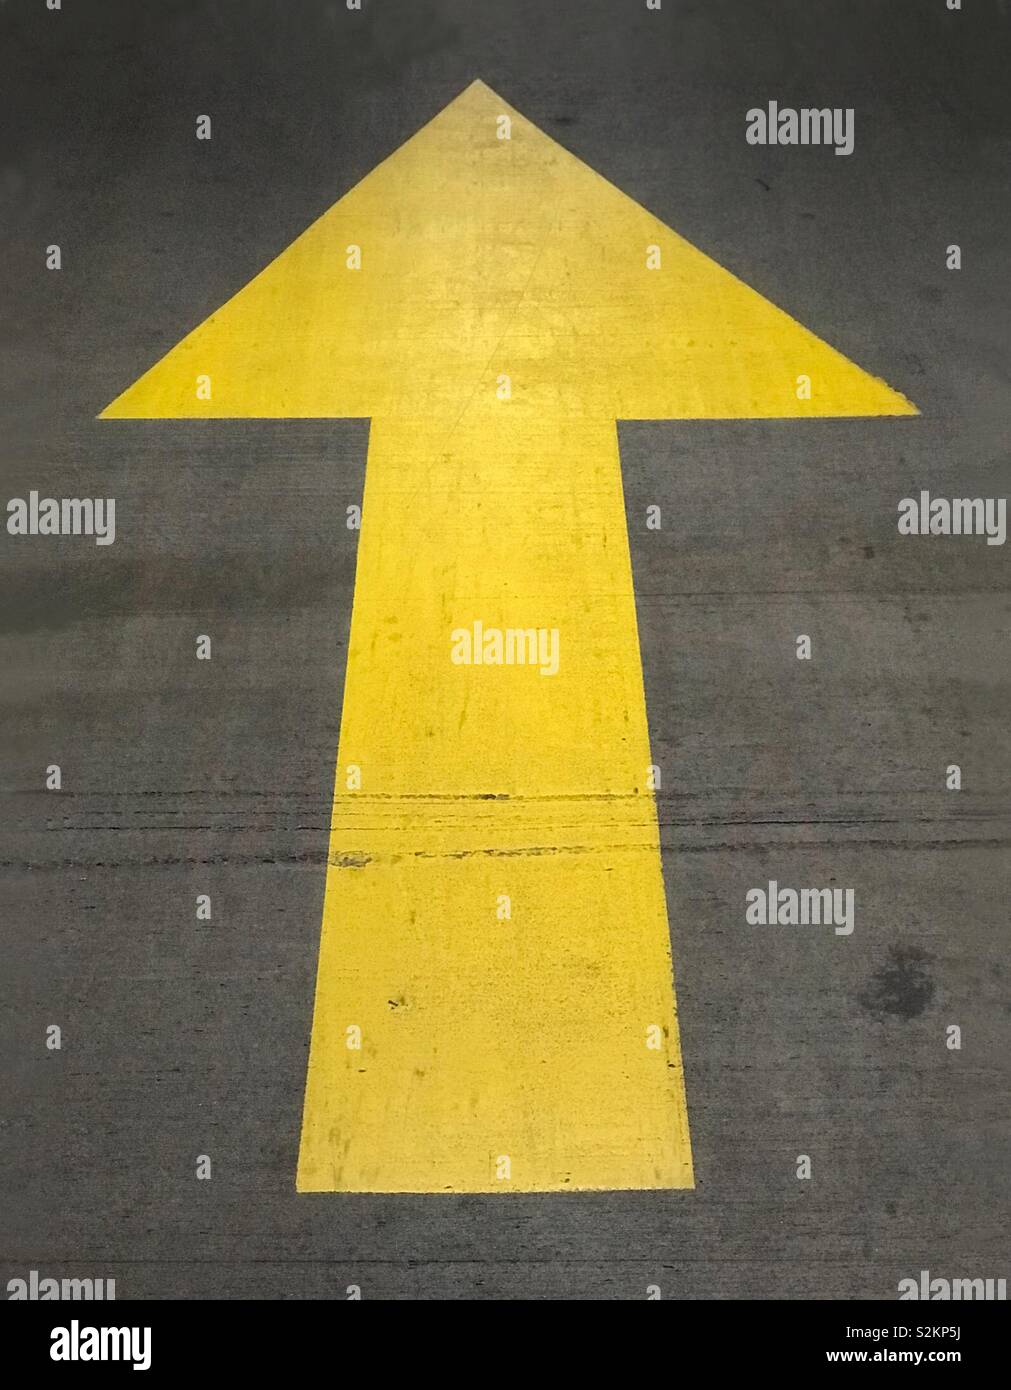 Eine gemalte, gelb, bis der Pfeil auf dem Boden einer Parkgarage gezeigt. Stockfoto